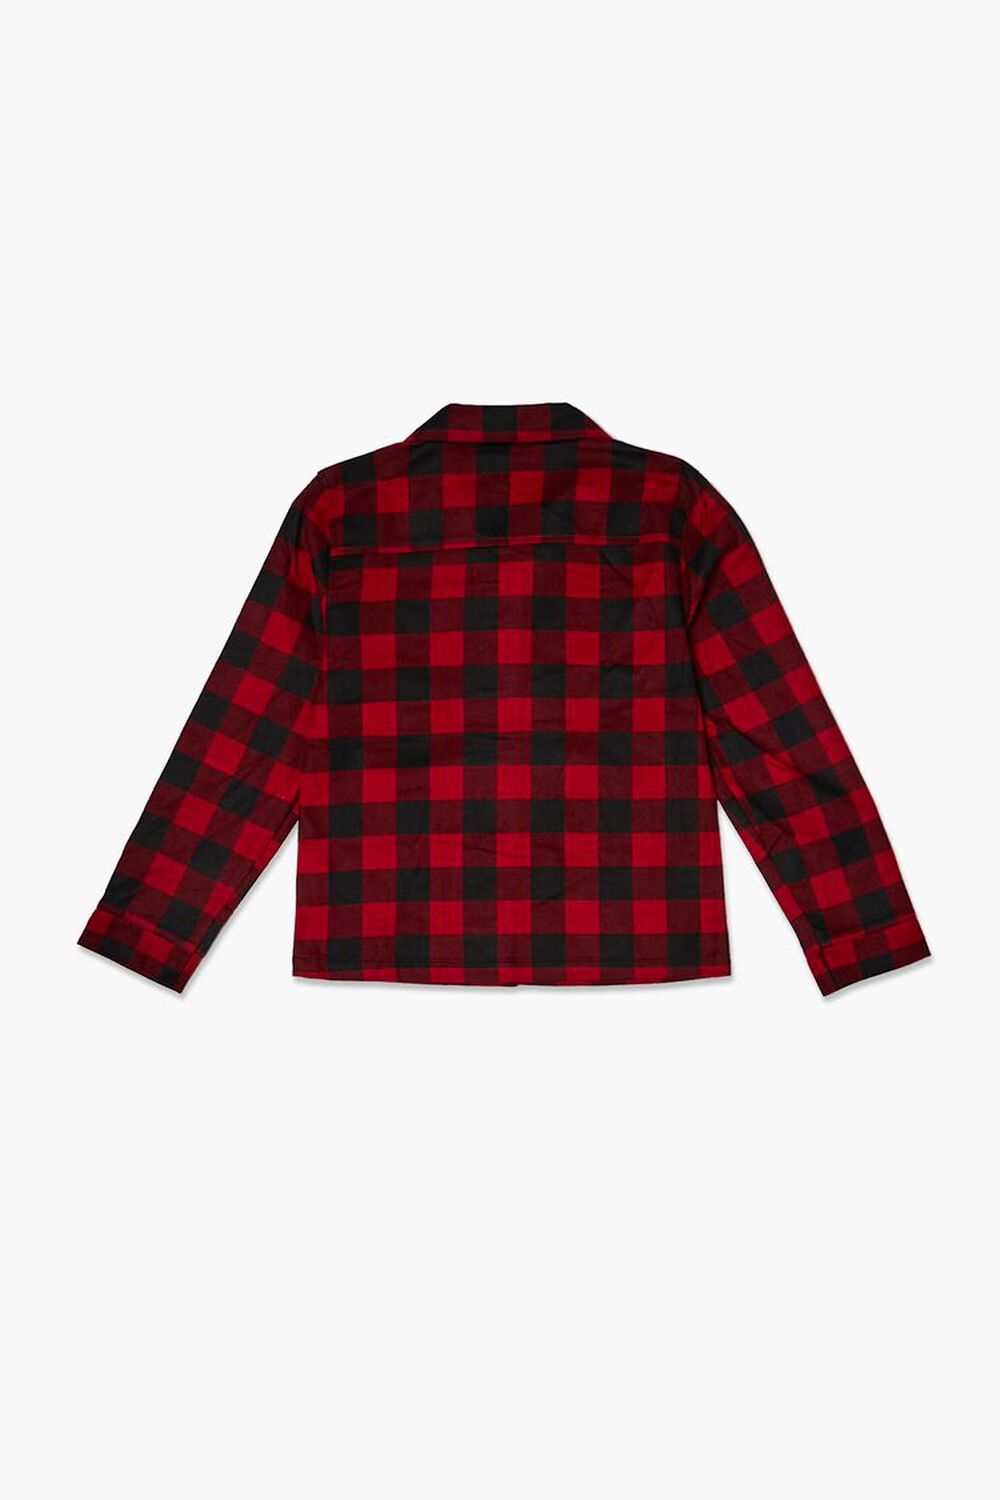 RED/BLACK Kids Buffalo Plaid PJ Shirt (Girls + Boys), image 2